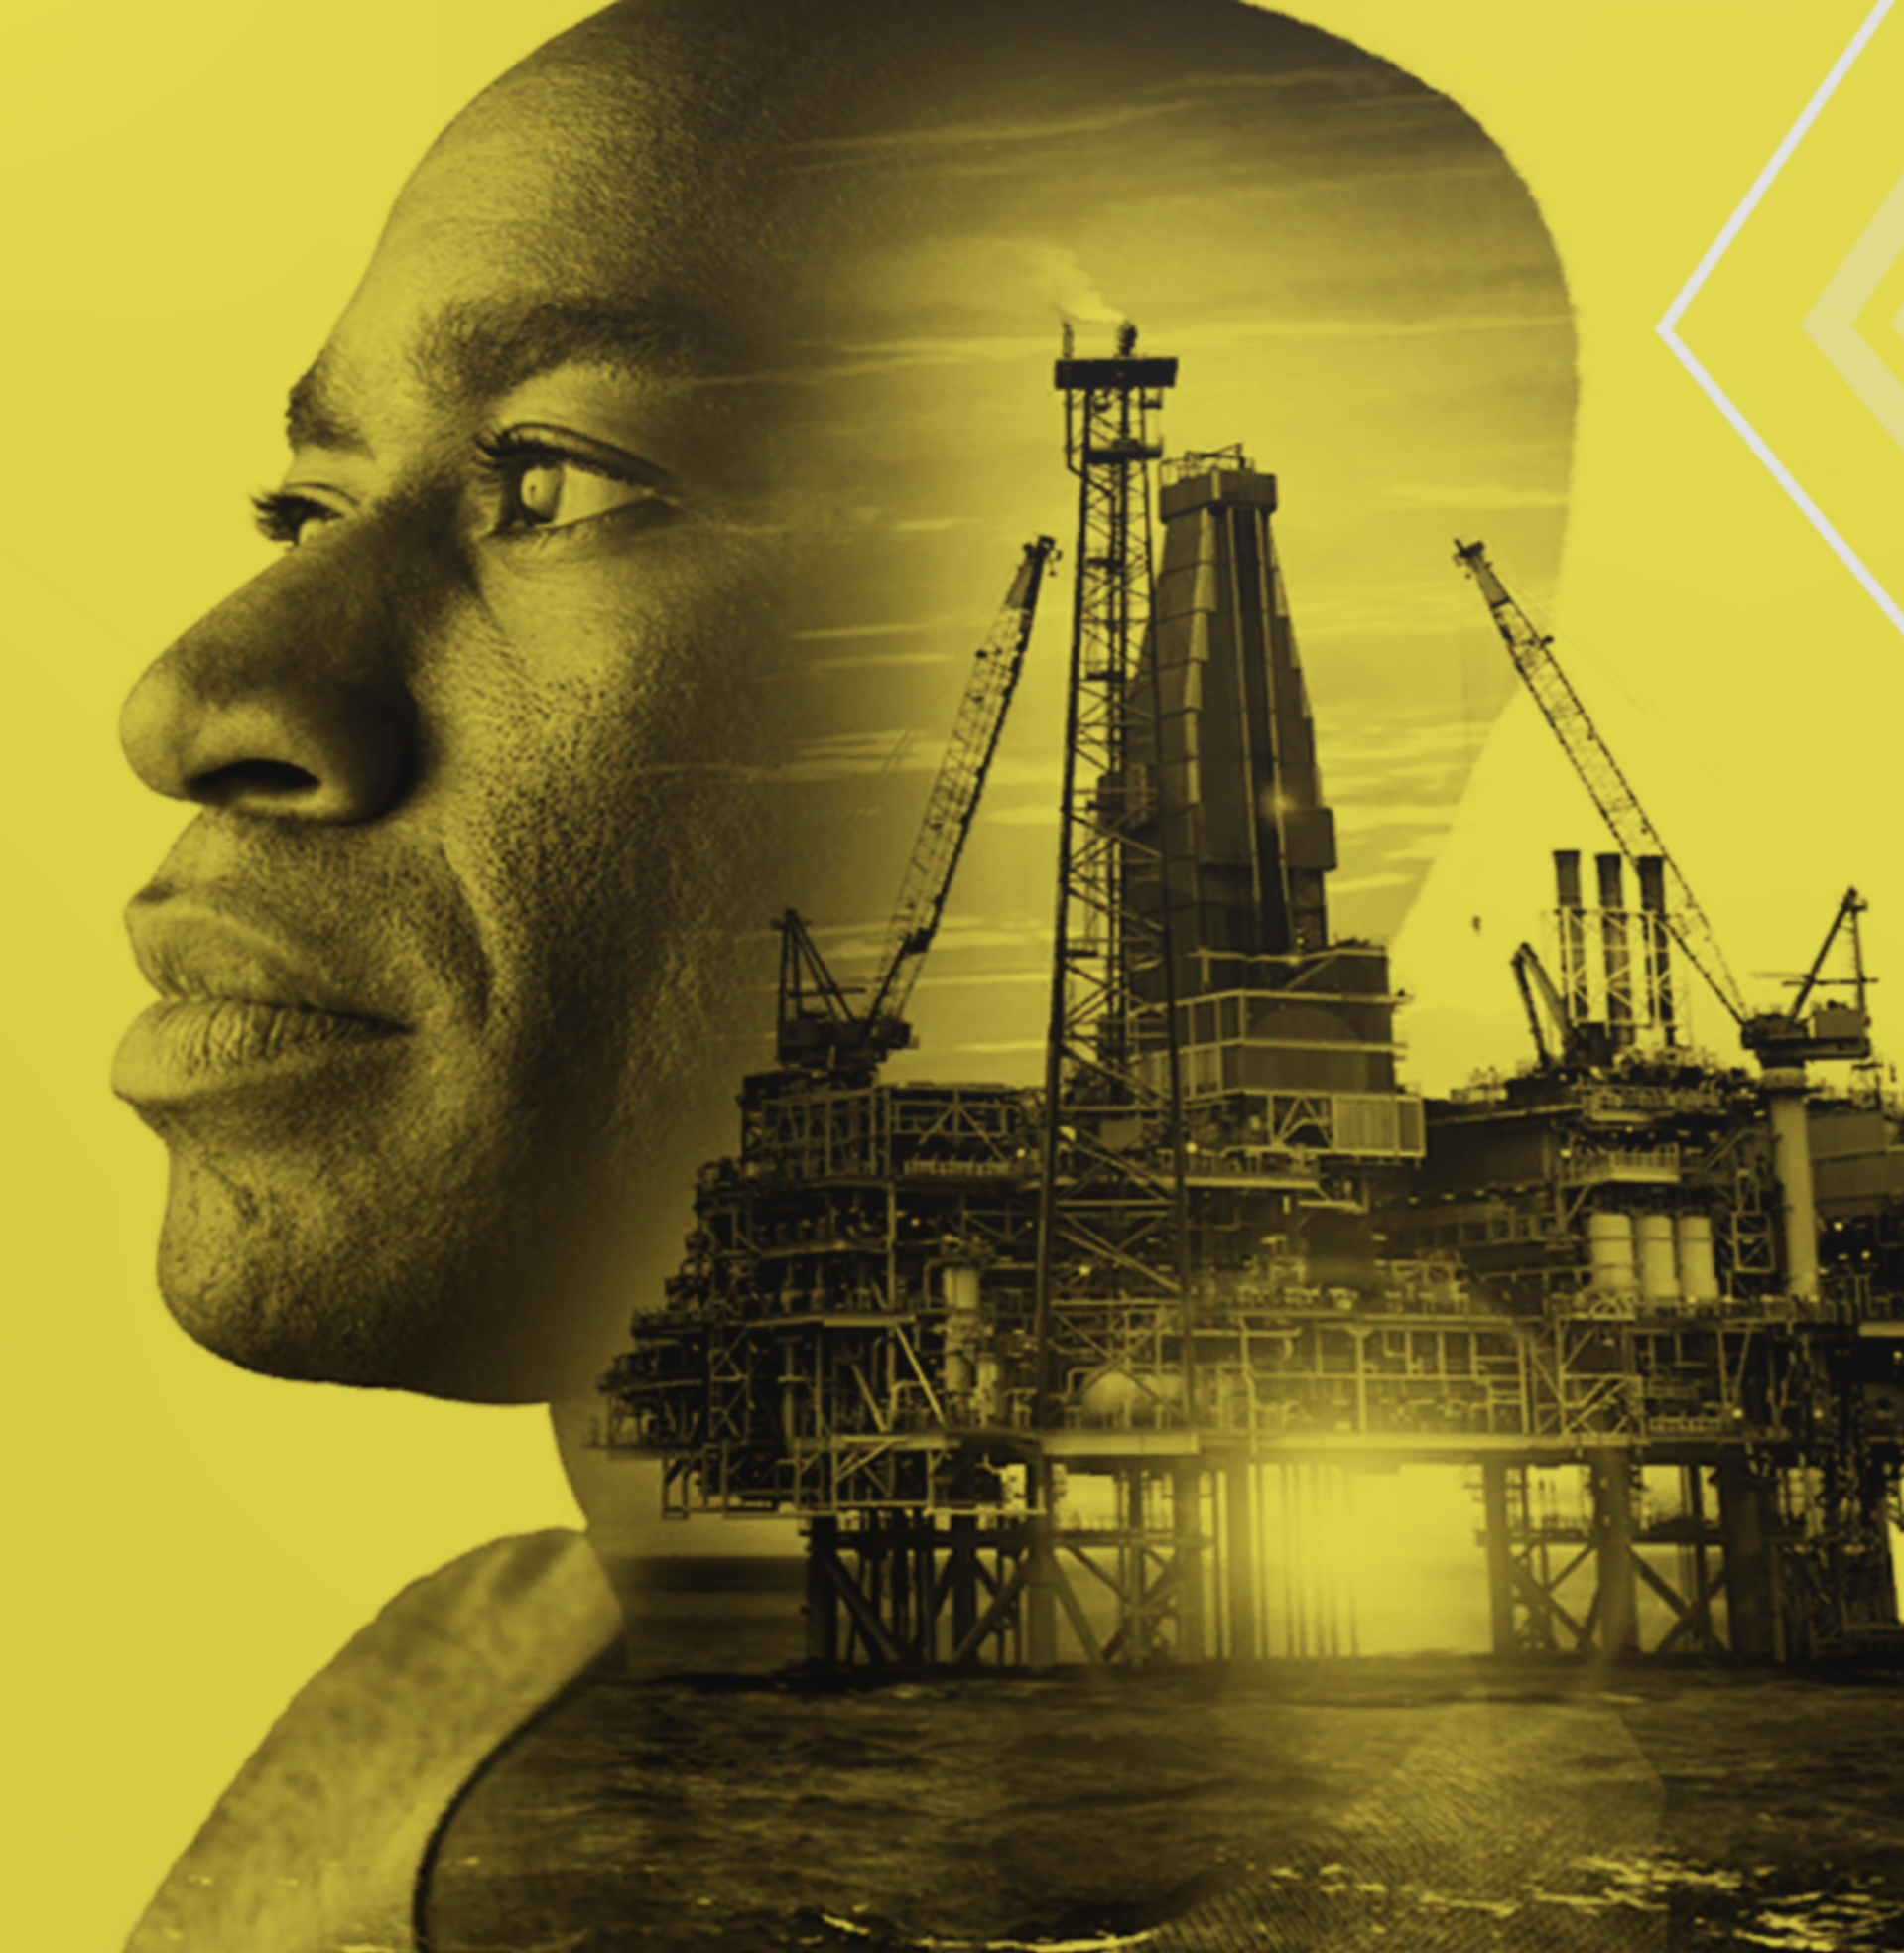 Collage av en man och en oljerigg mot gul bakgrund.